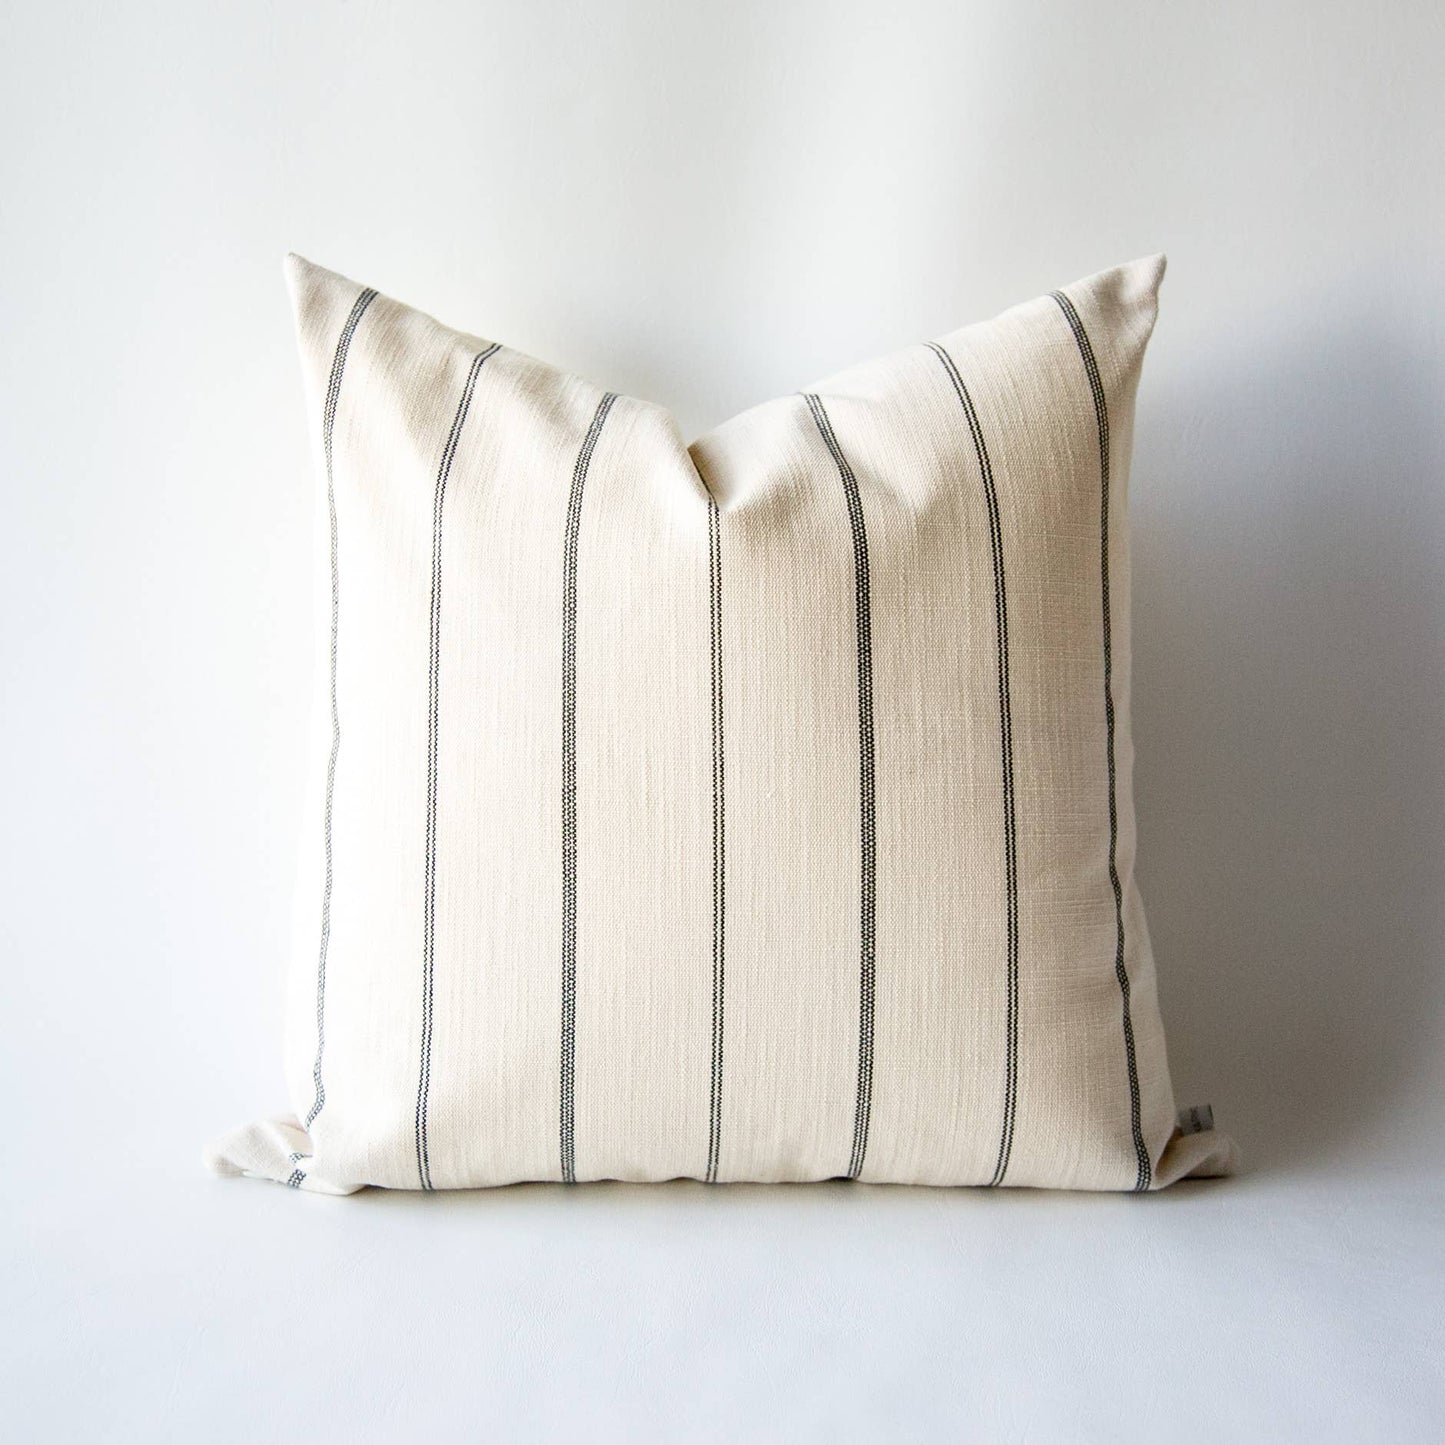 Parchment Pillow Cover (18x18)